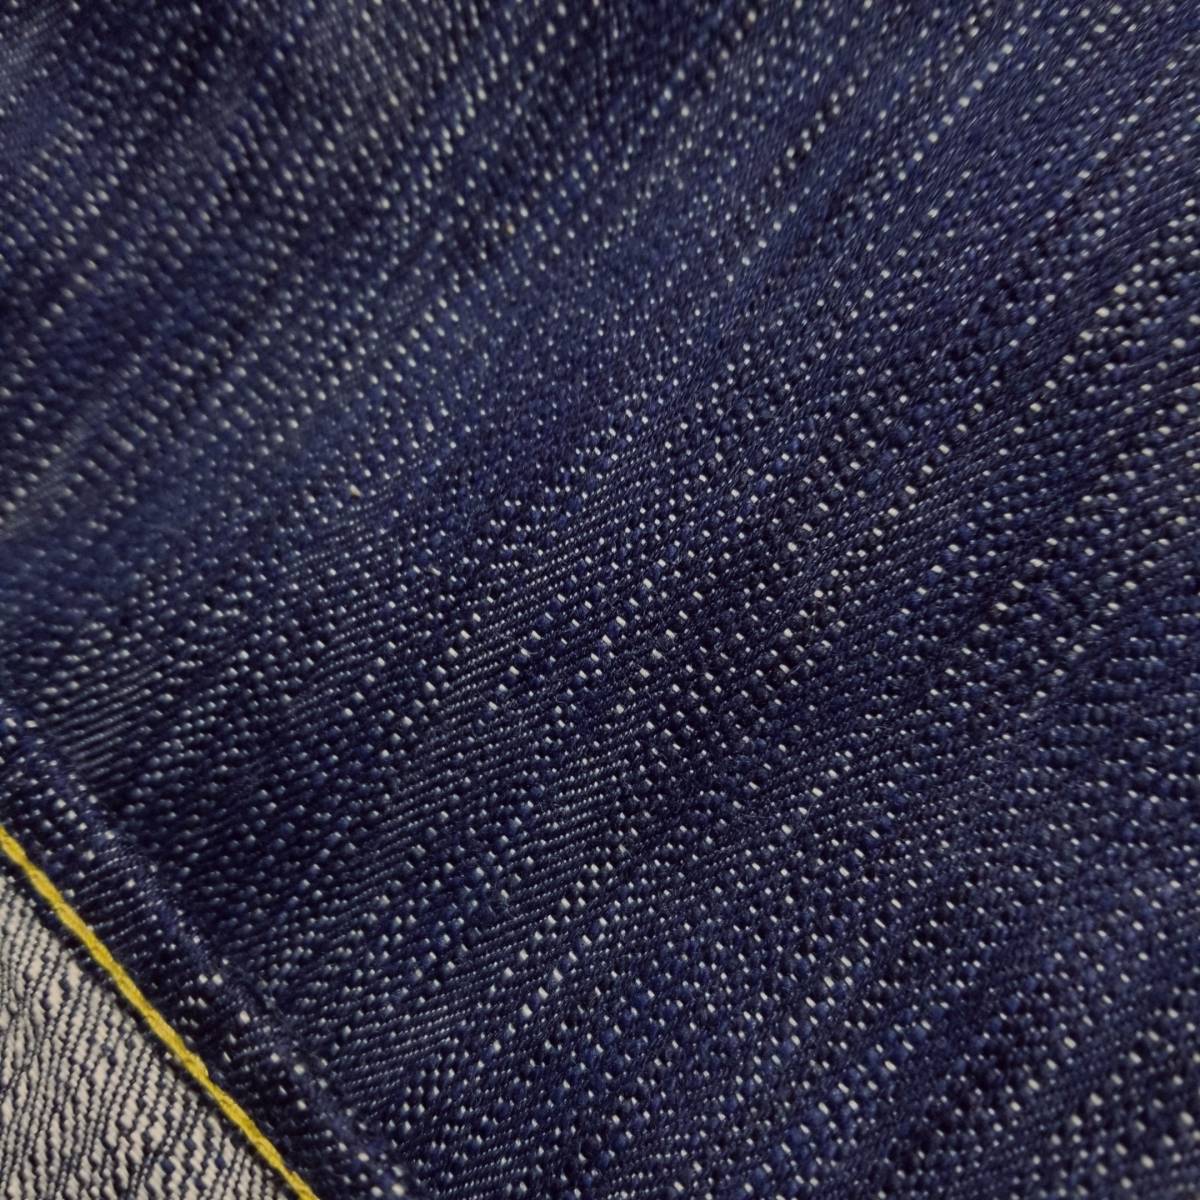  новый товар правильный индиго джинсы W32 16oz натуральный индиго книга@ индиго Denim s Rav индиго окраска Denim jeans Tokushima Natural Indigo Hand Dyed JAPAN